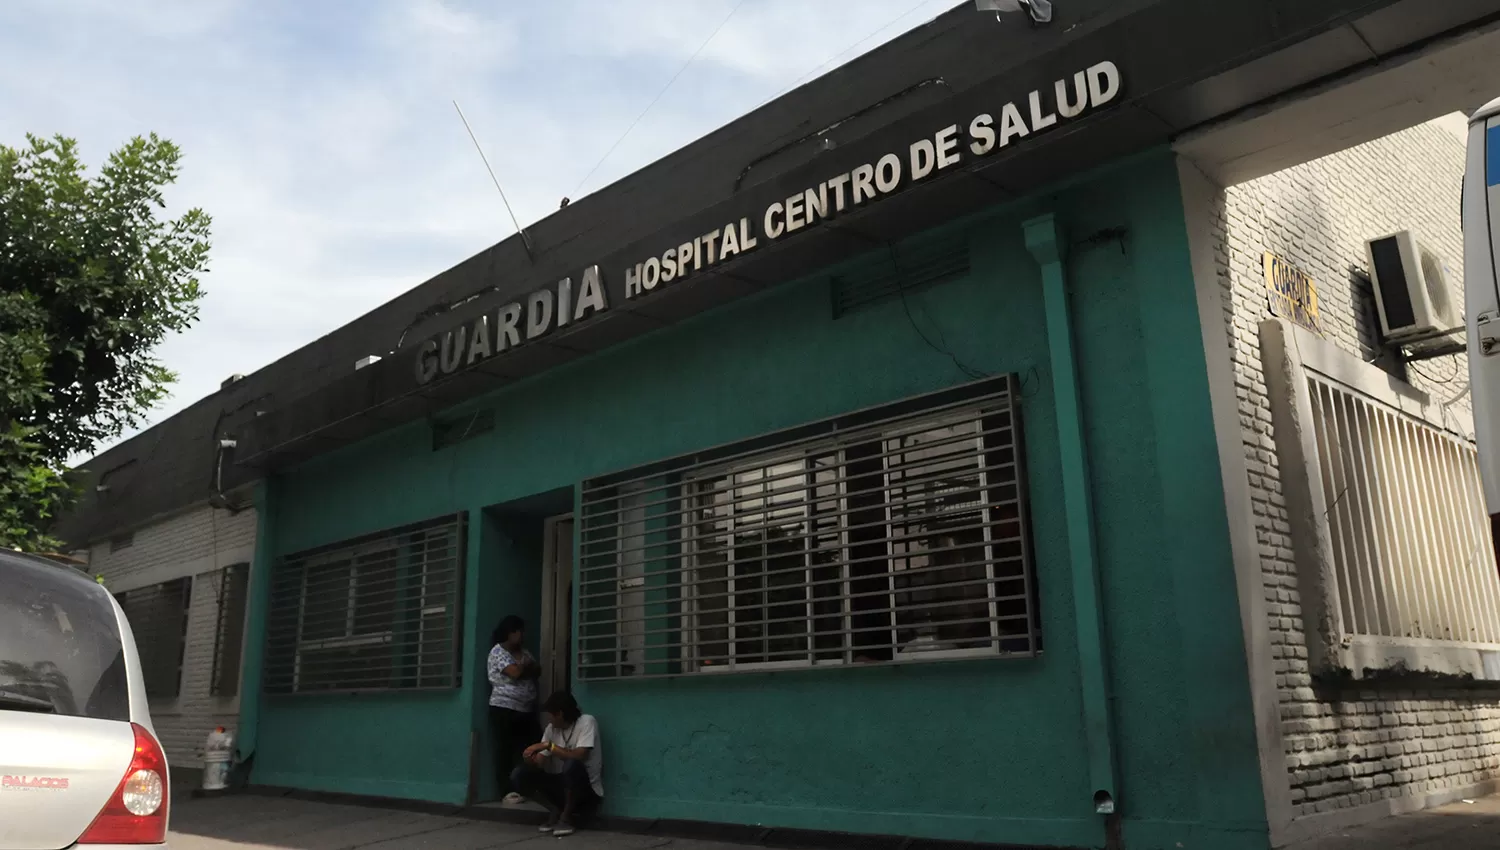 El policía fue trasladado al hospital Centro de Salud. LA GACETA/FOTO DE ANALÍA JARAMILLO (ARCHIVO)